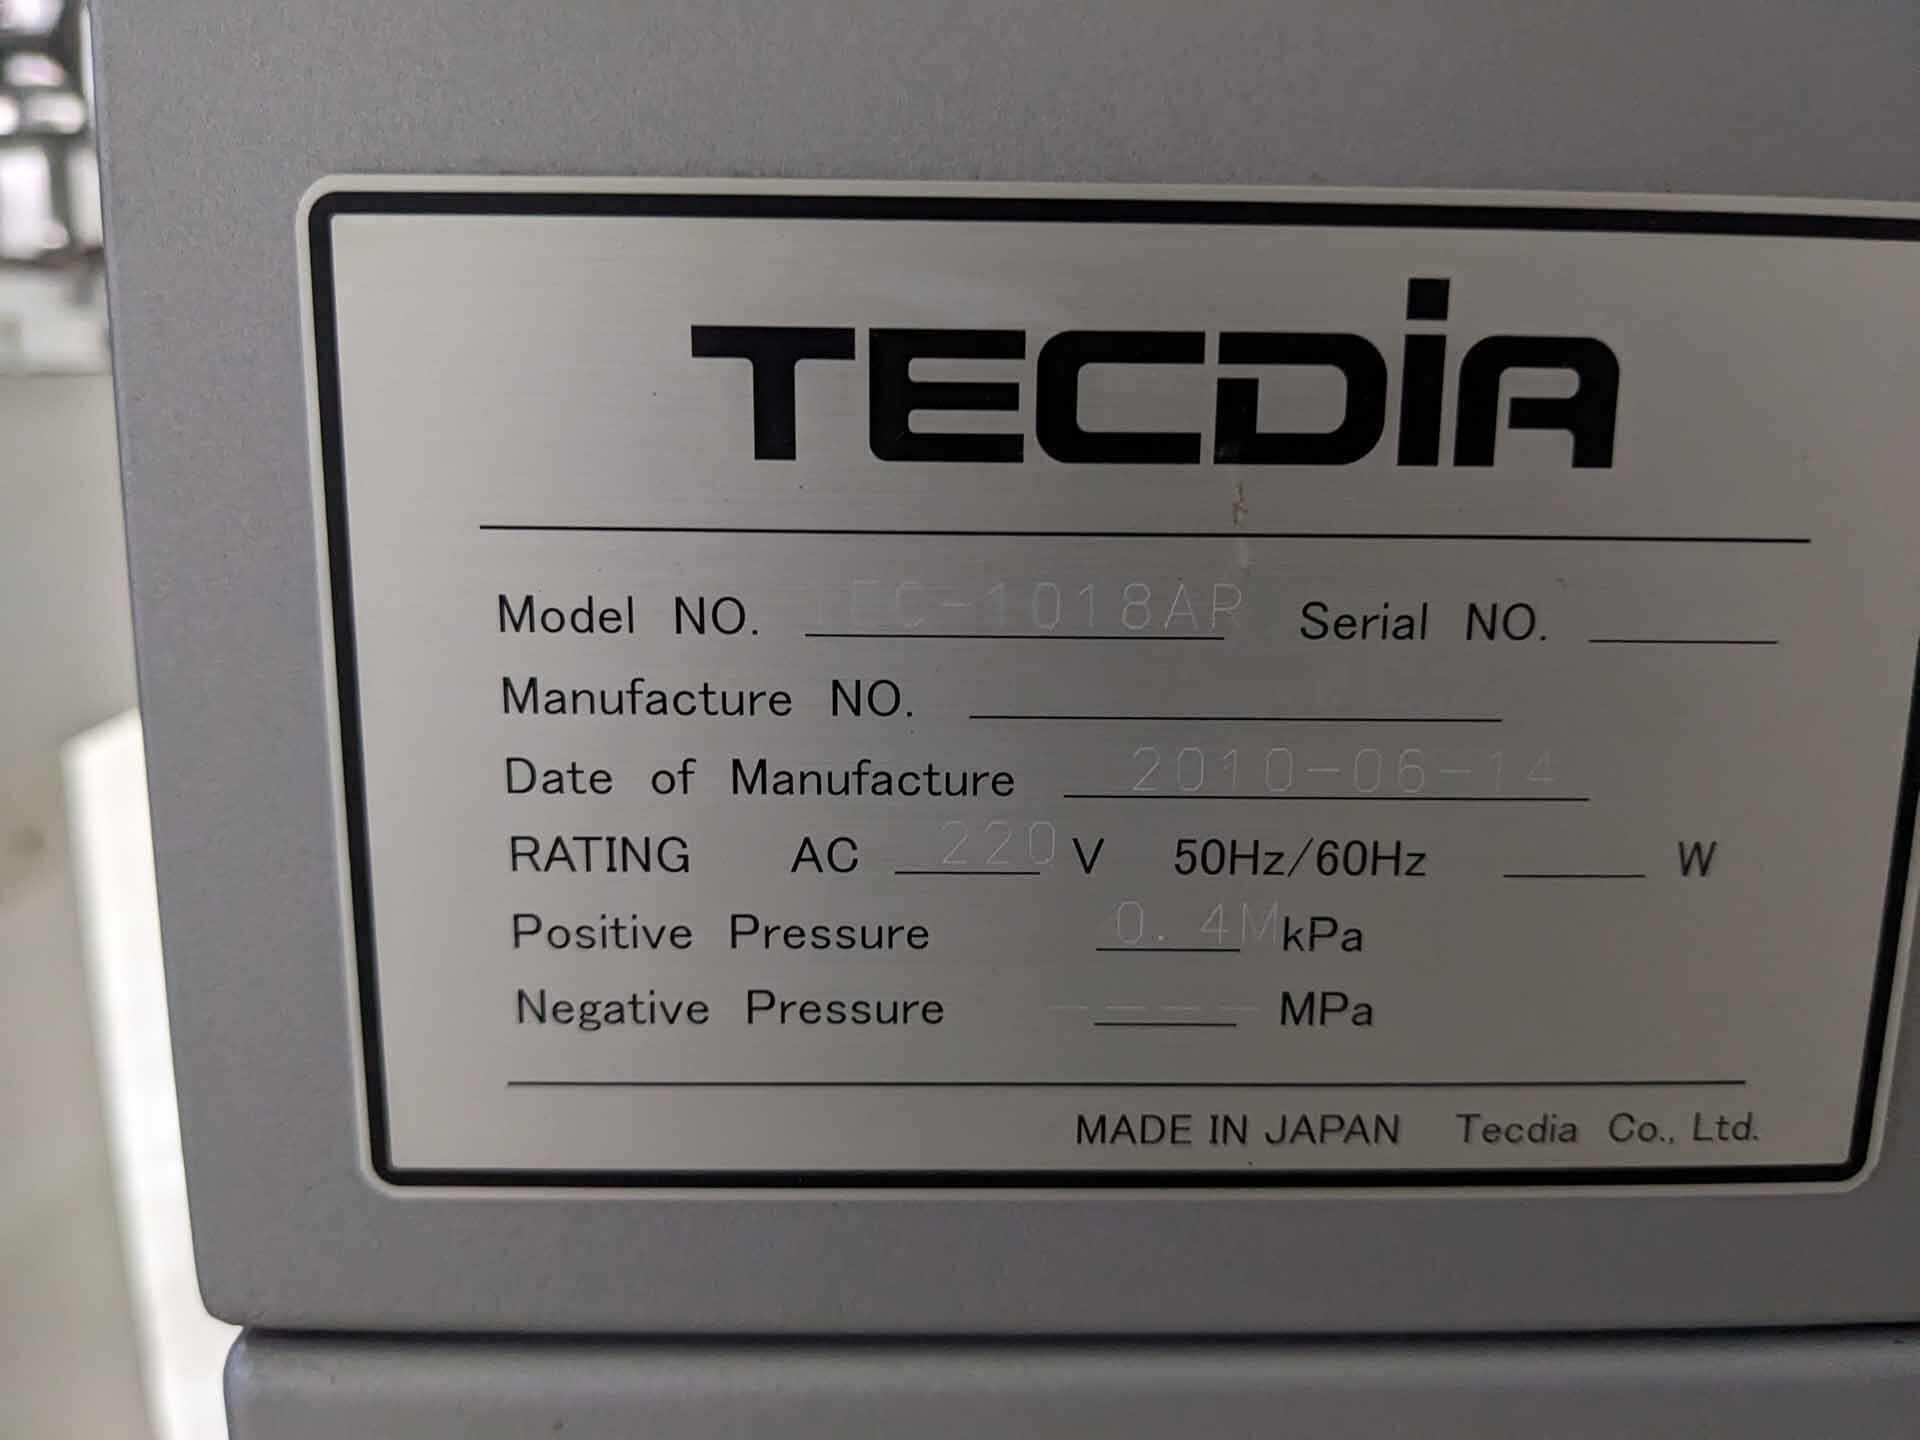 圖為 已使用的 TECDIA TEC 1018AR 待售